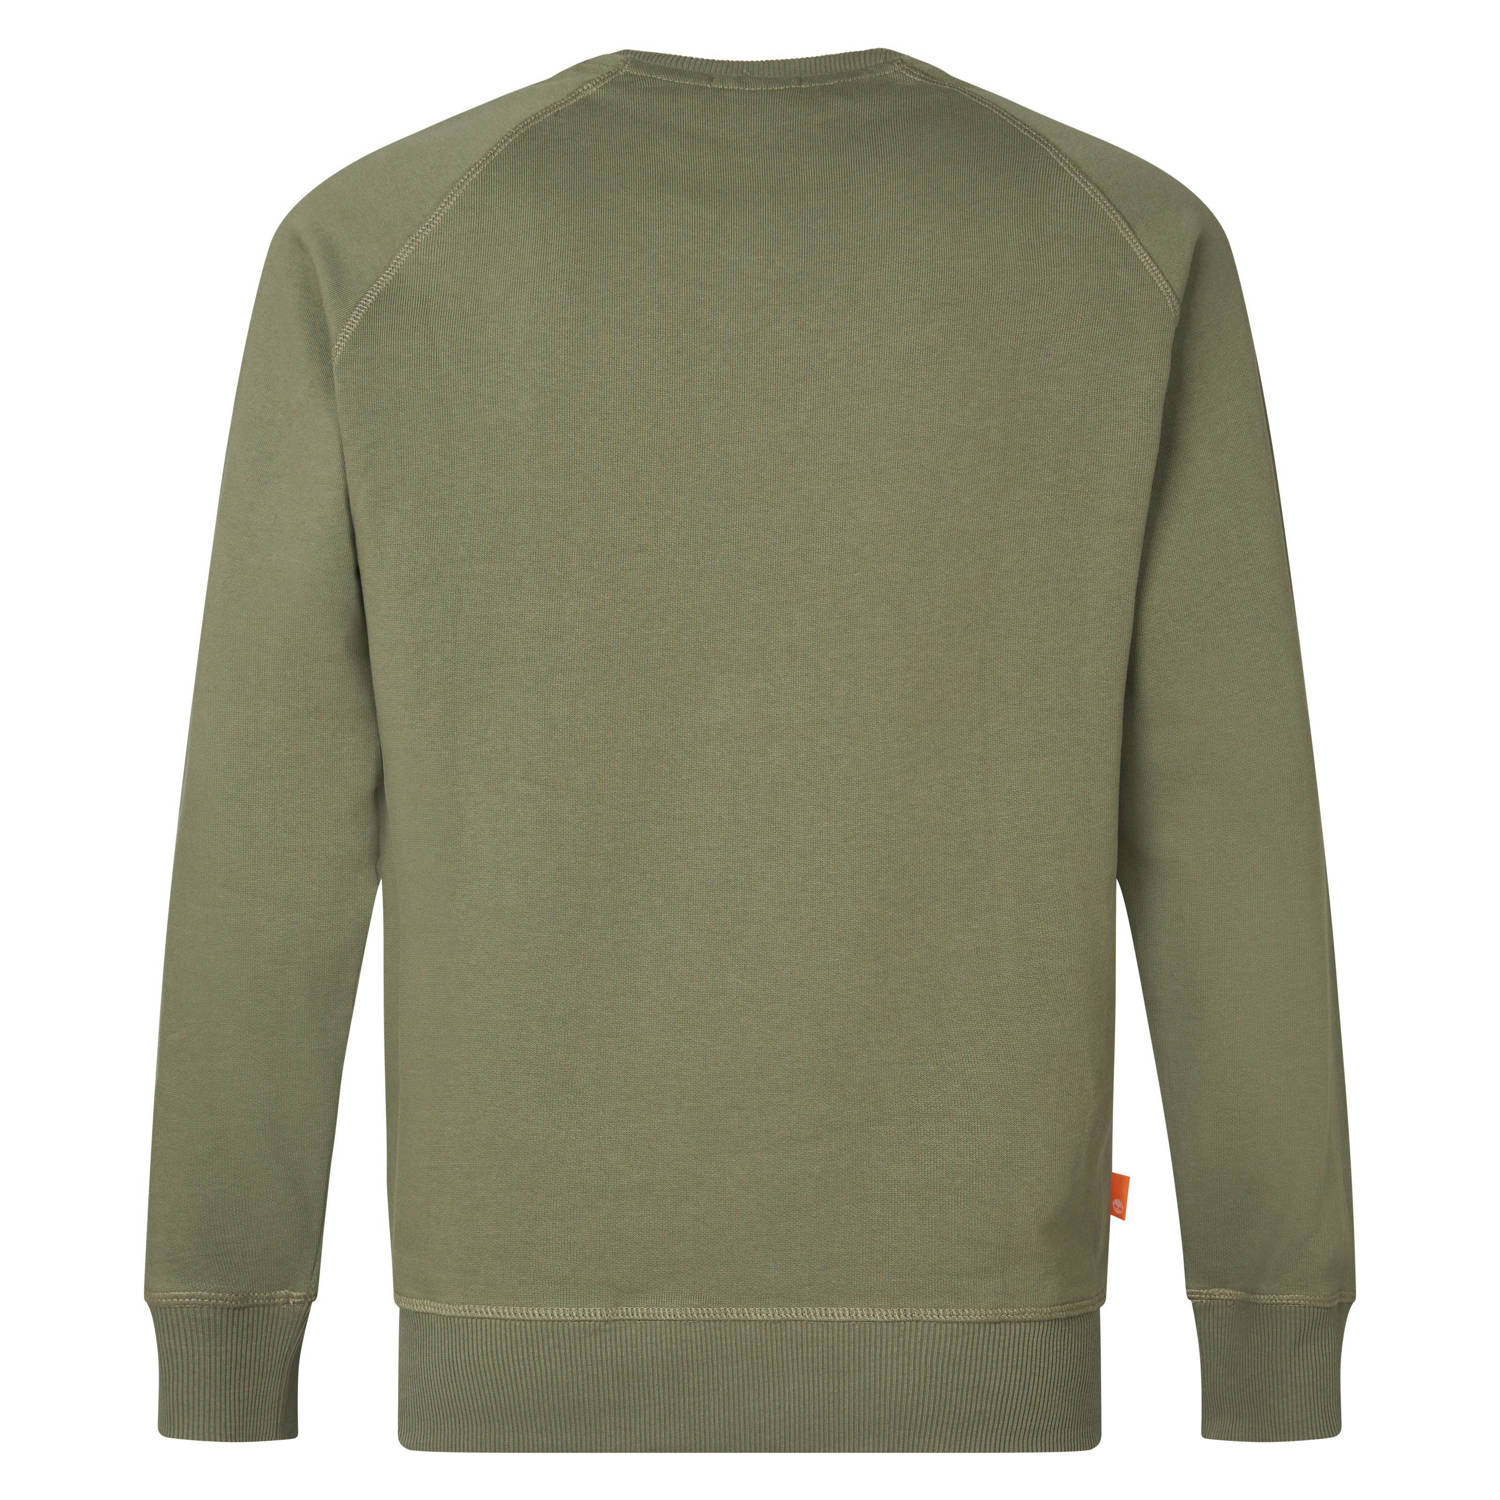 Timberland sweater met logo groen